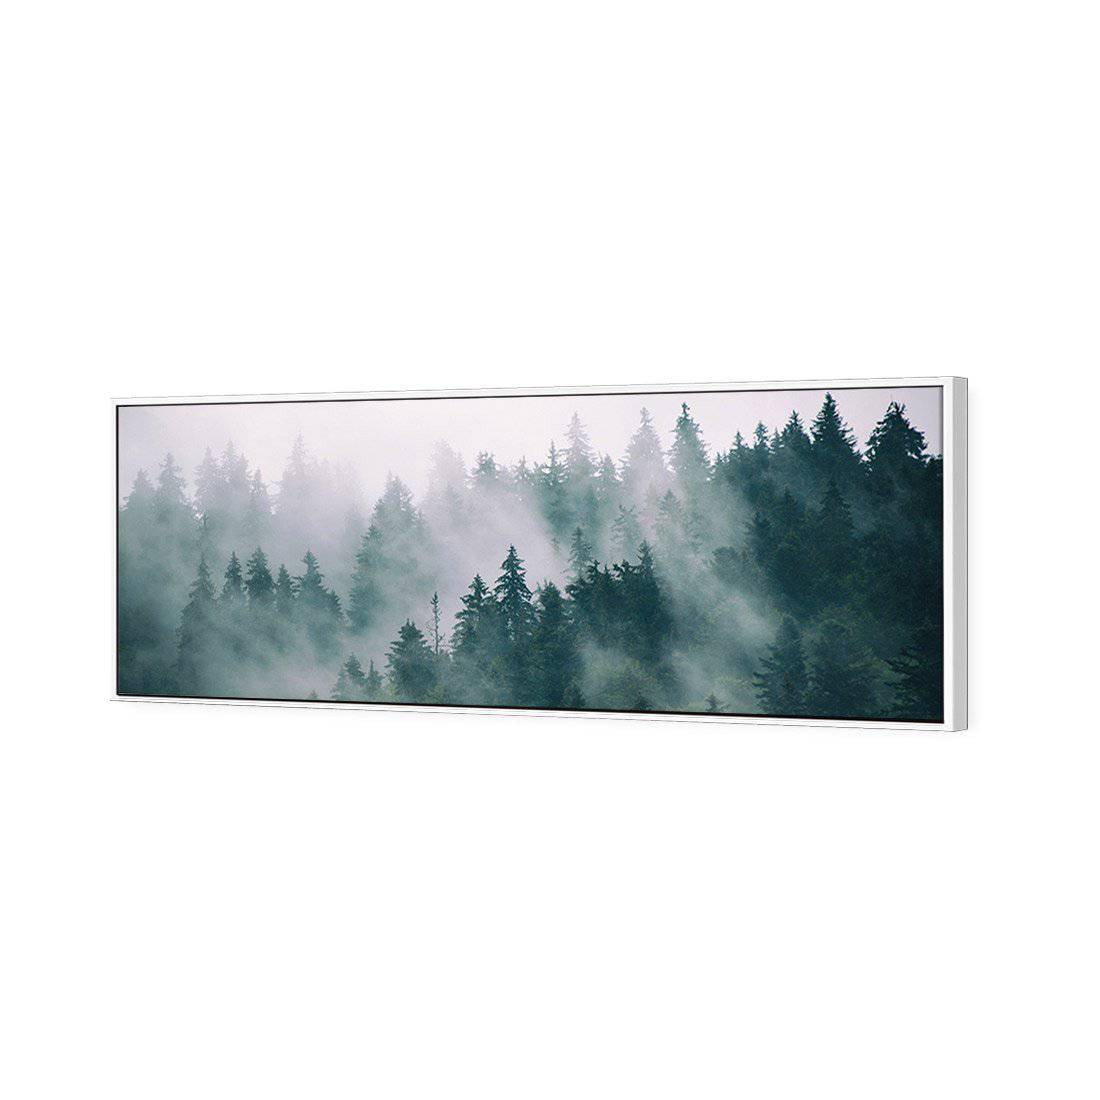 Silence of the Alps Canvas Art-Canvas-Wall Art Designs-60x20cm-Canvas - White Frame-Wall Art Designs